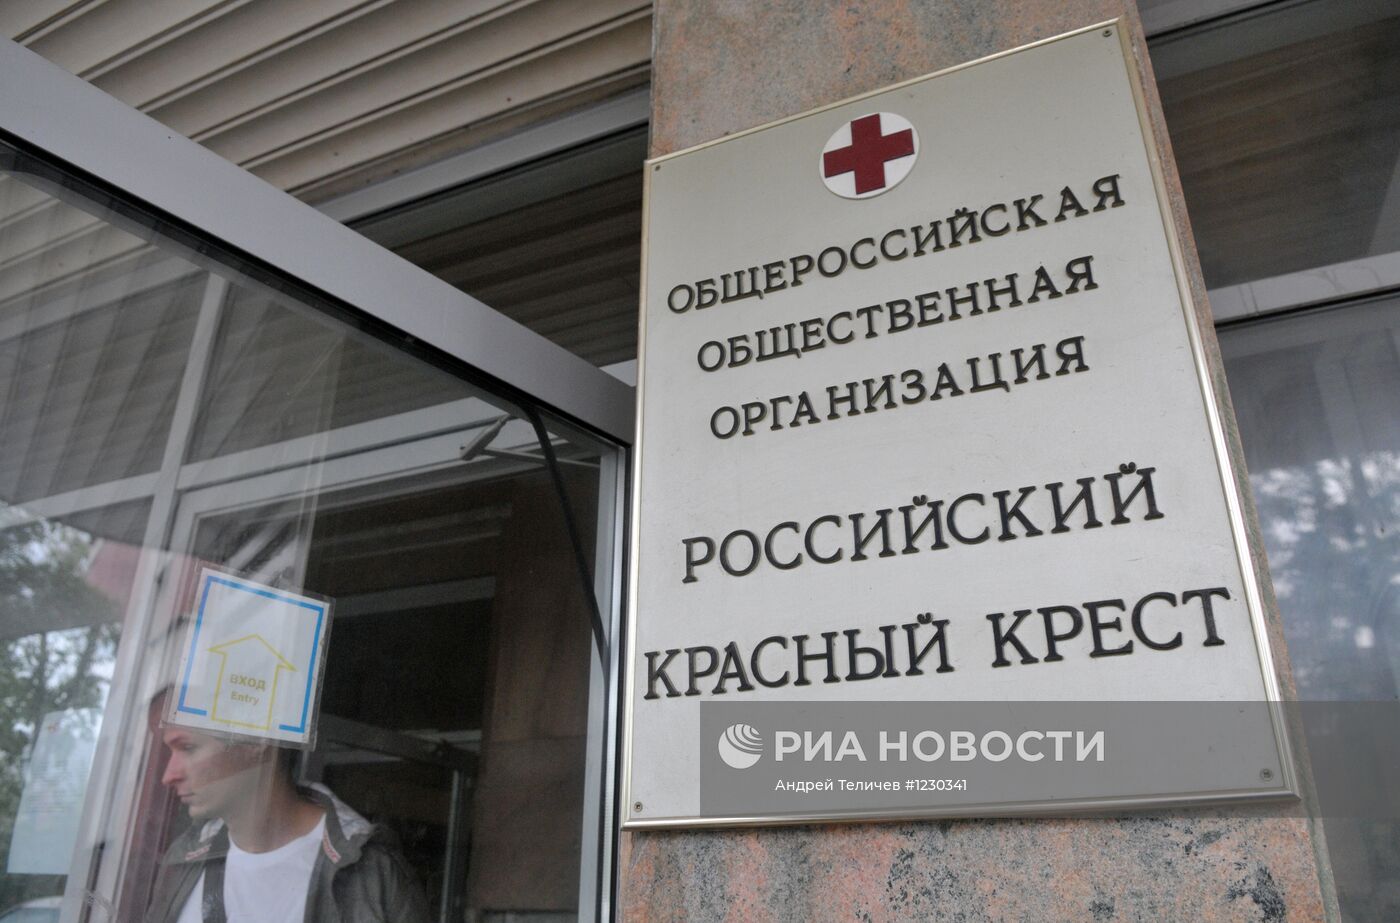 Офис российского Красного креста в Москве